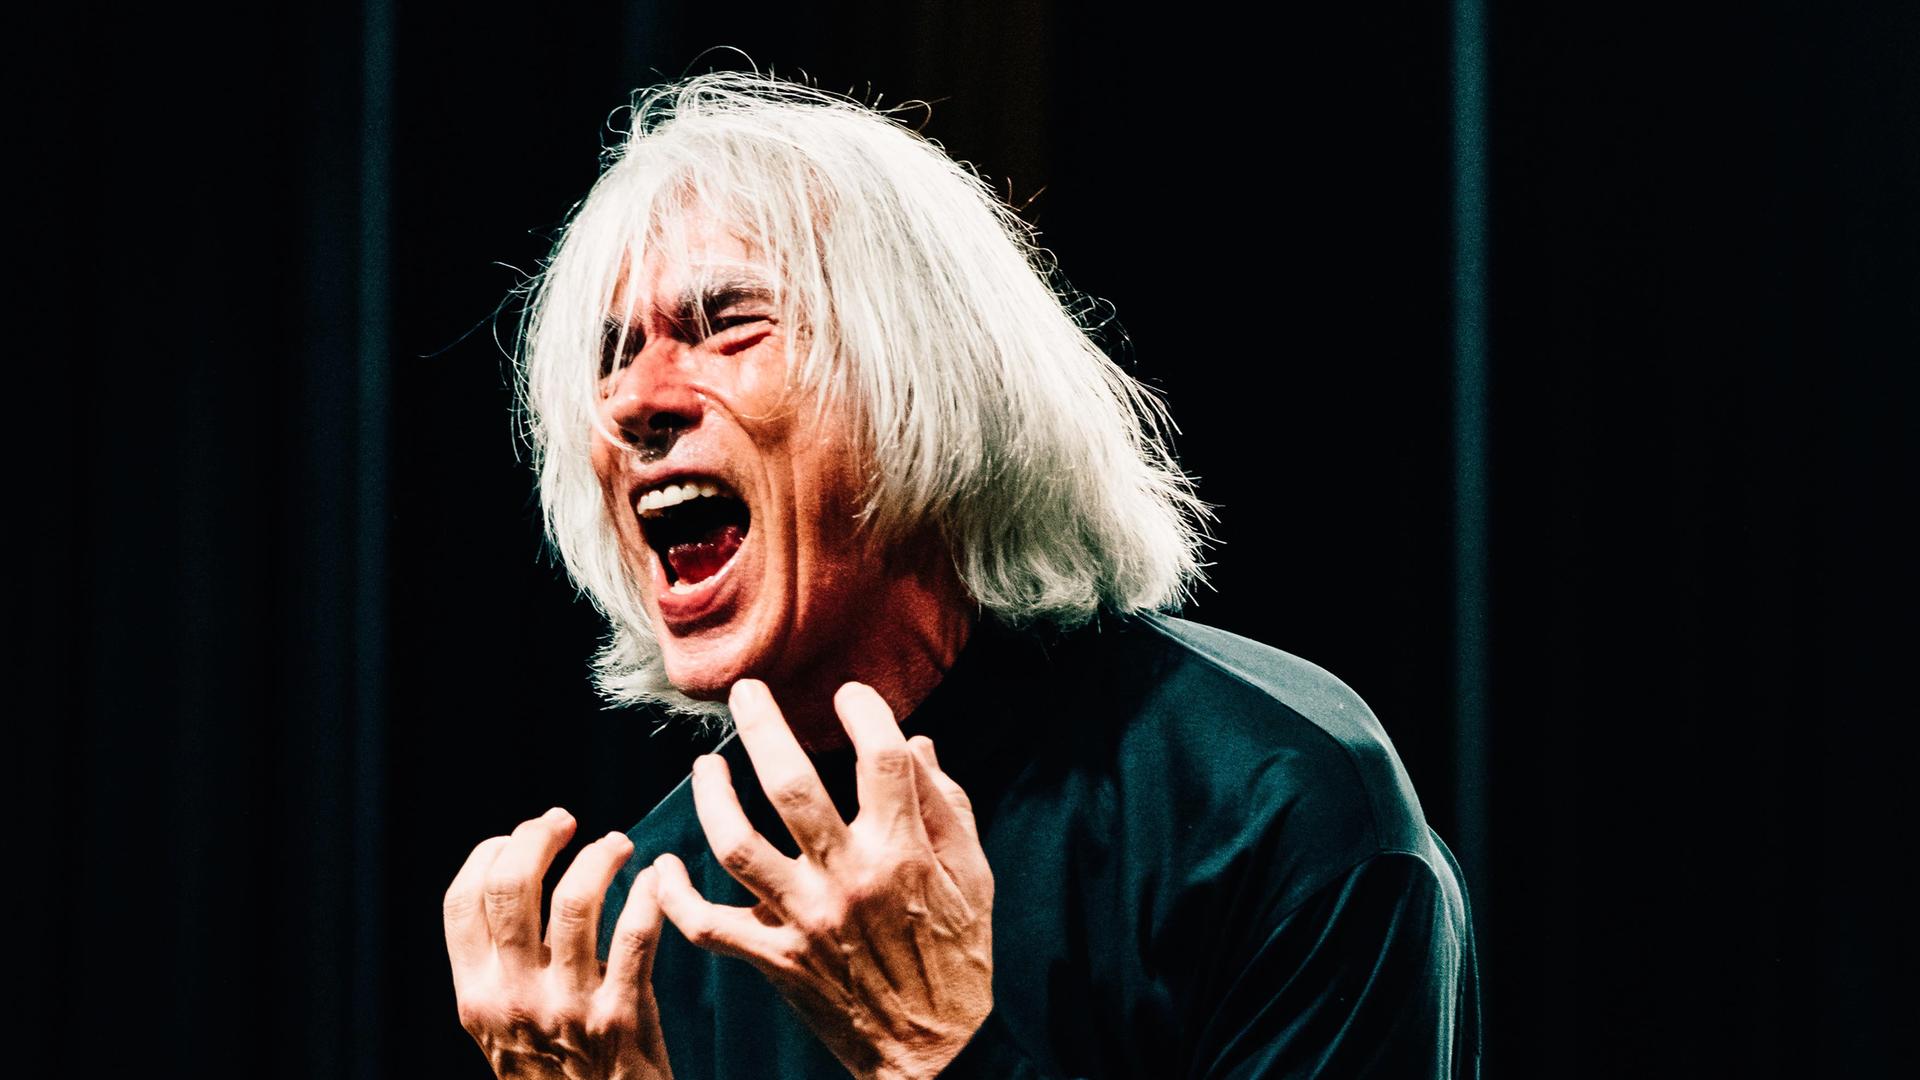 Ein Mann mit Schulterlangen weißen Haaren steht auf der Bühne und schreit, mit beiden Händen nach Ausdruck ringend